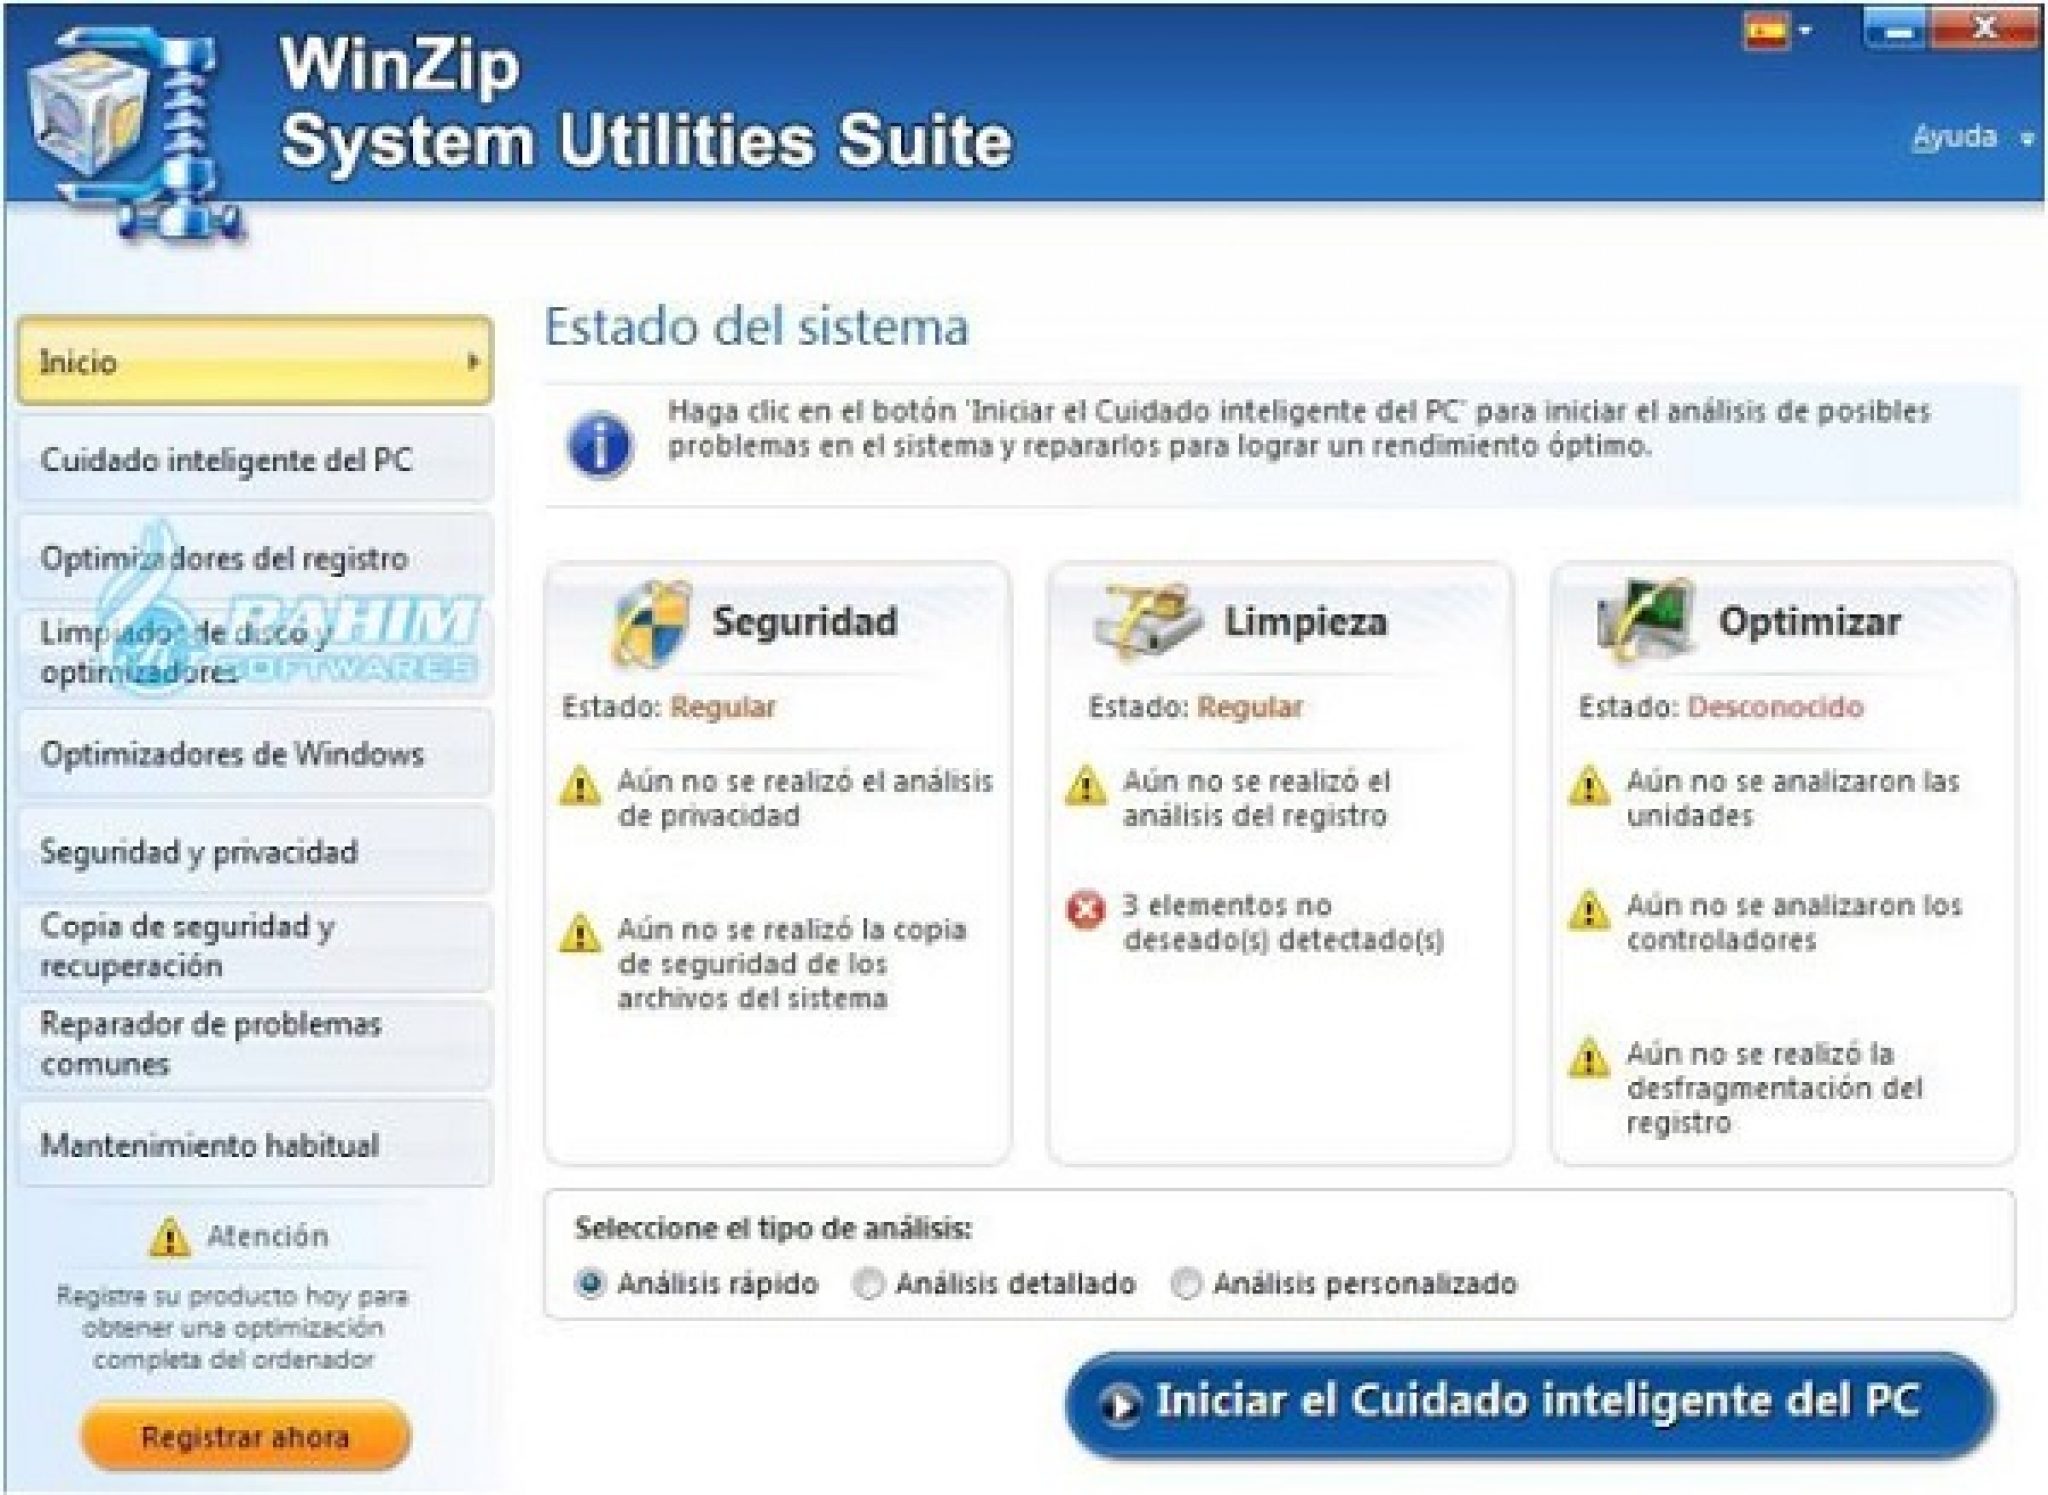 winzip system utilities